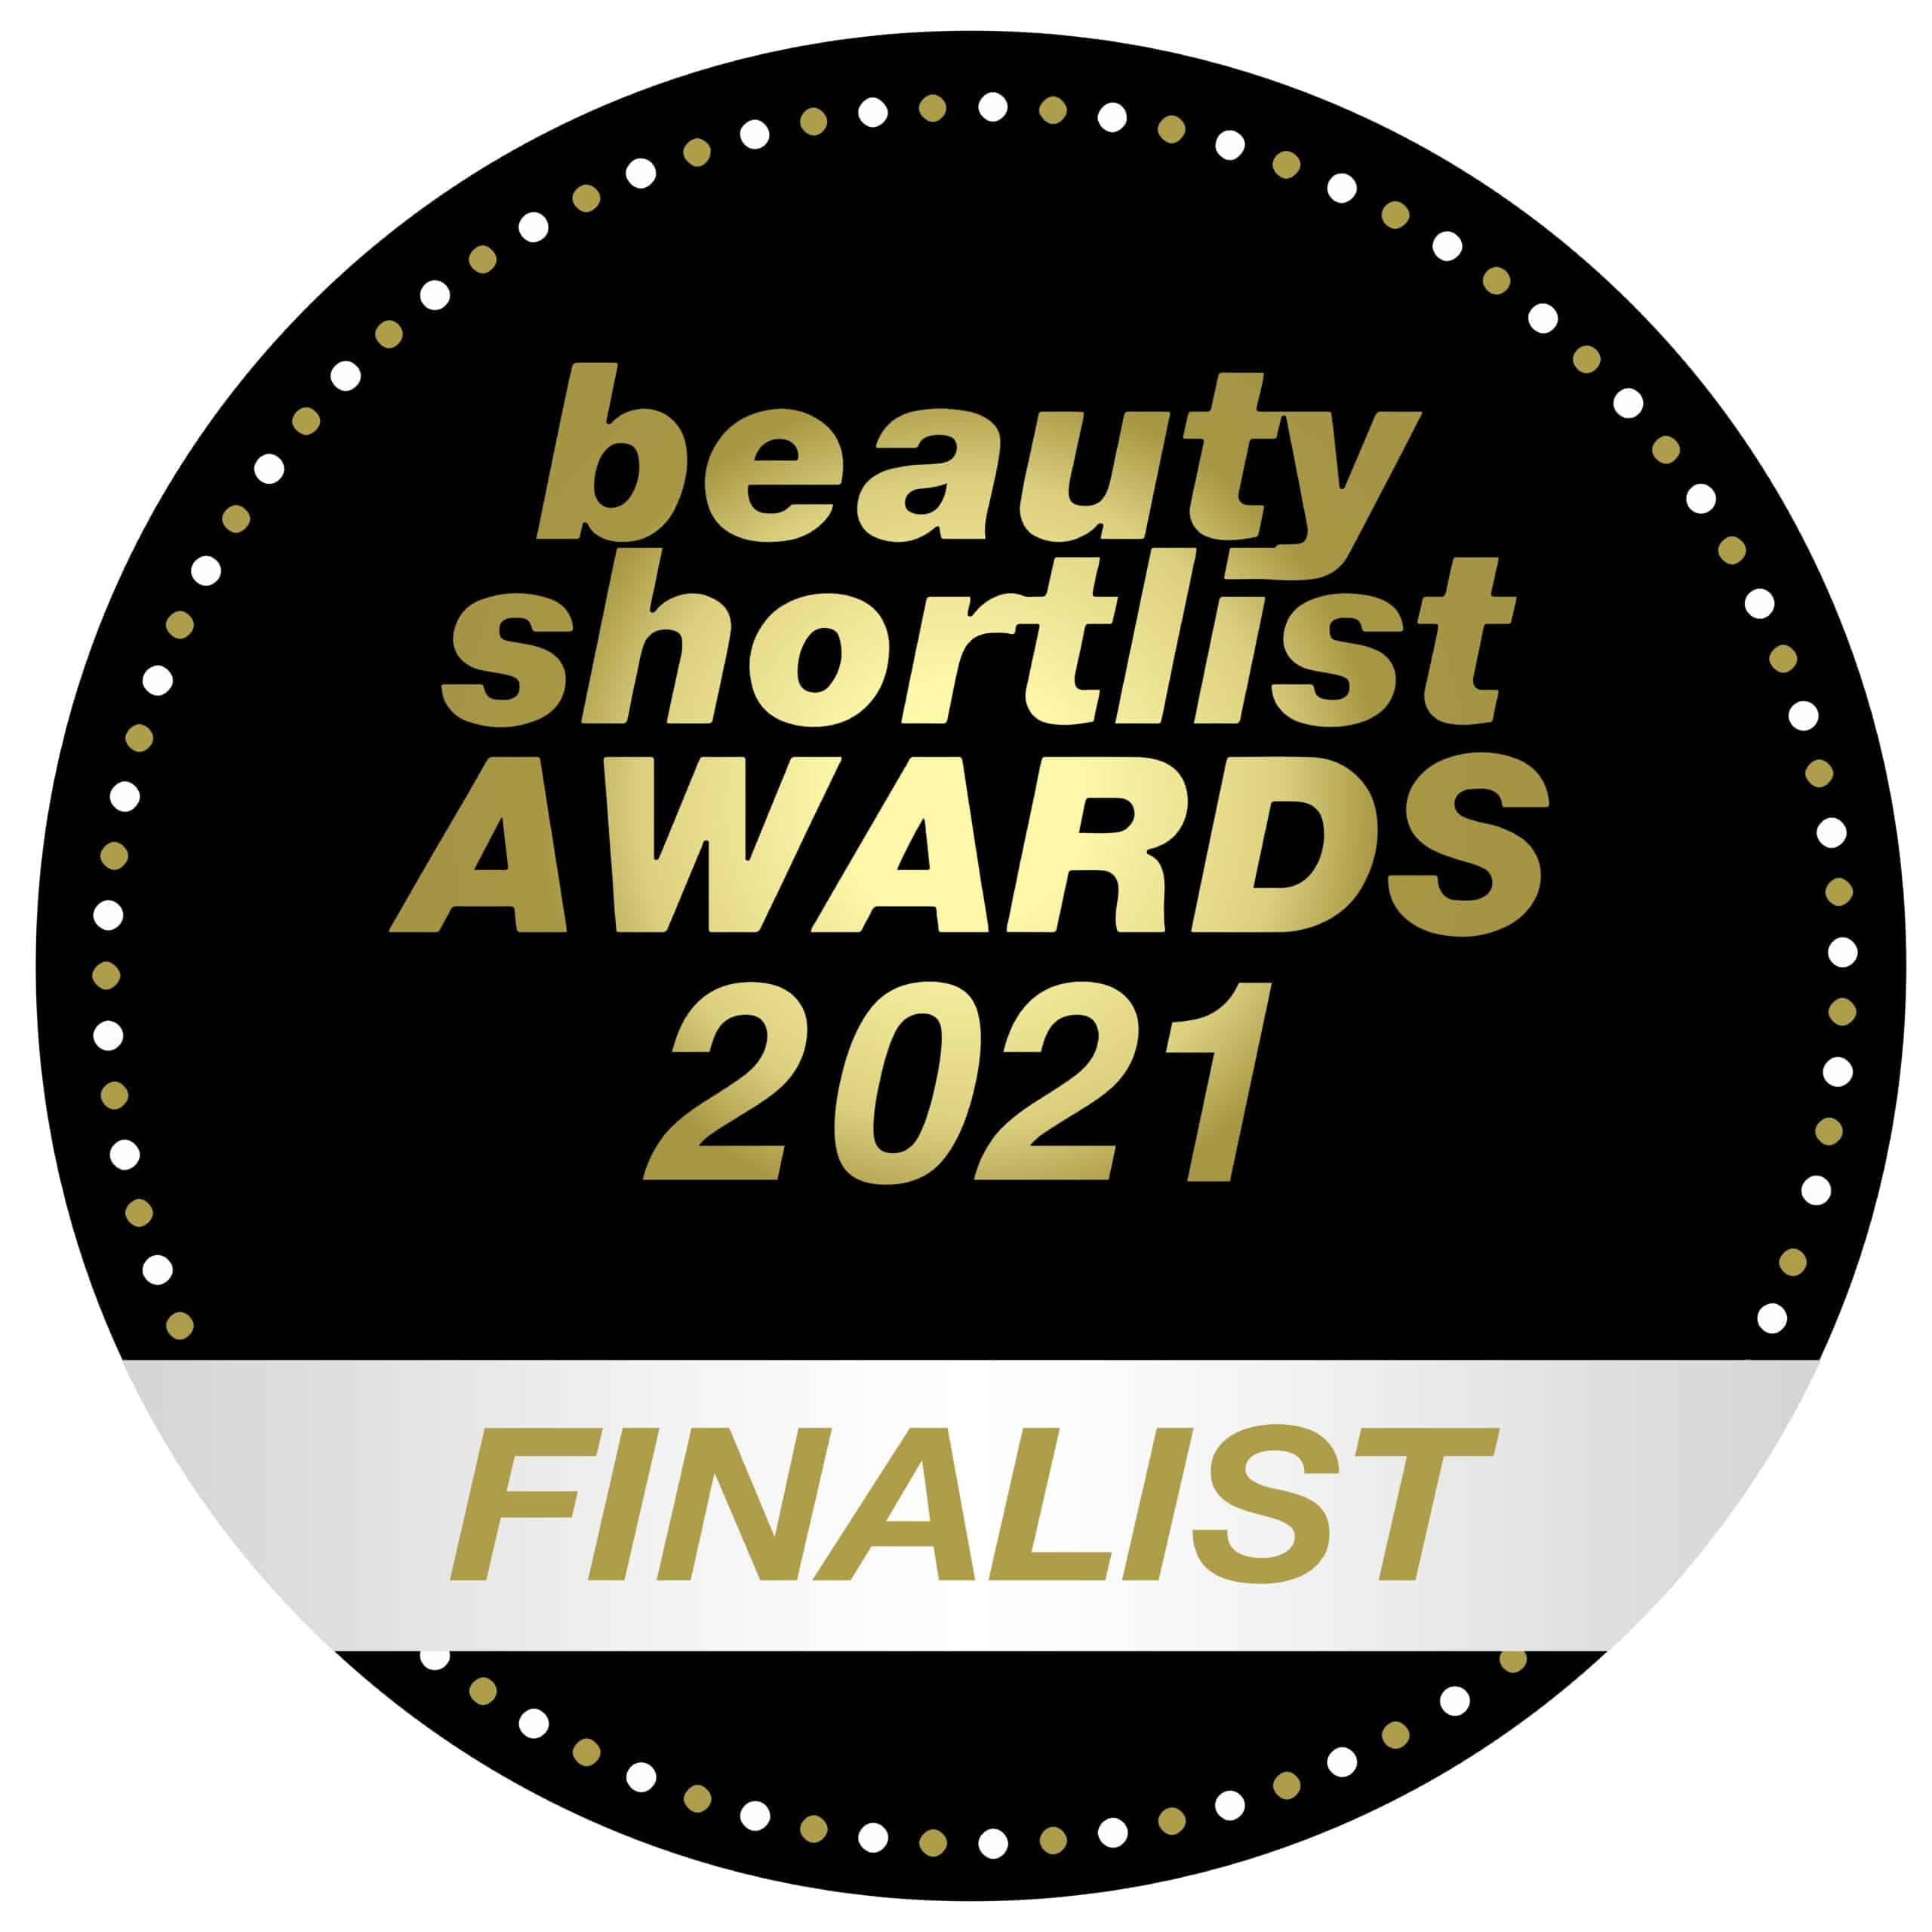 beauty shortlist awards 2021 finalist